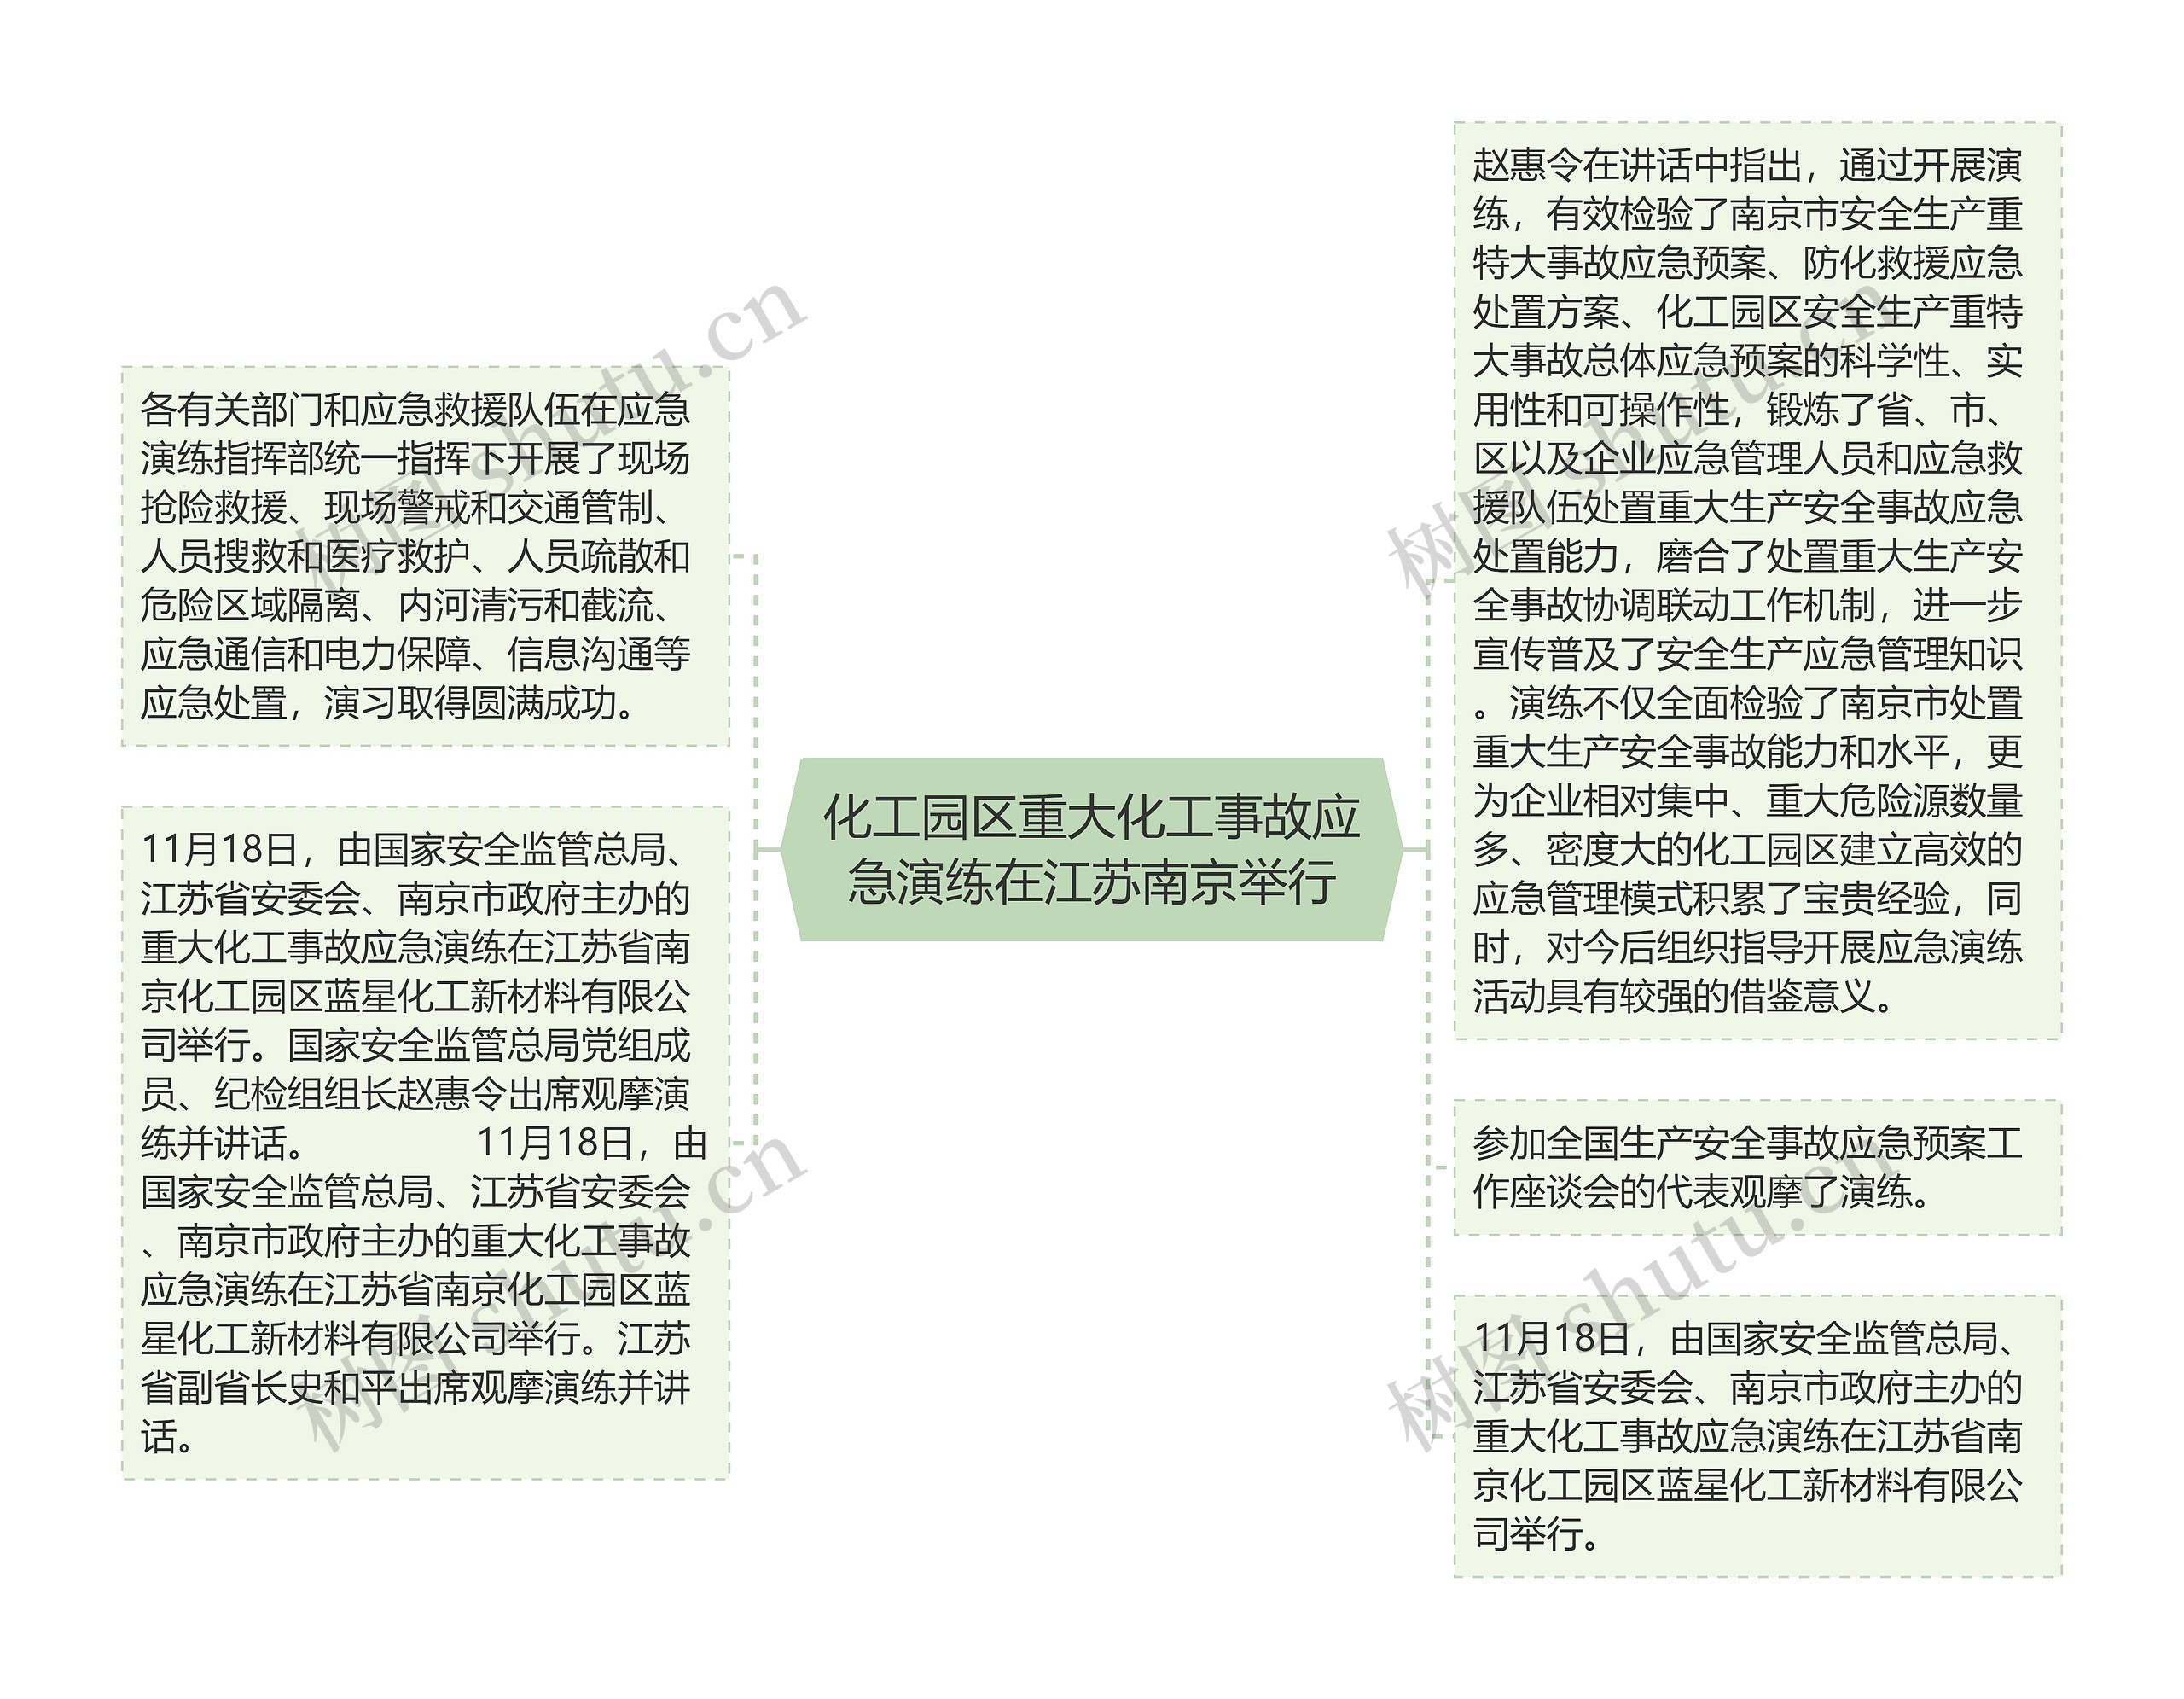 化工园区重大化工事故应急演练在江苏南京举行思维导图